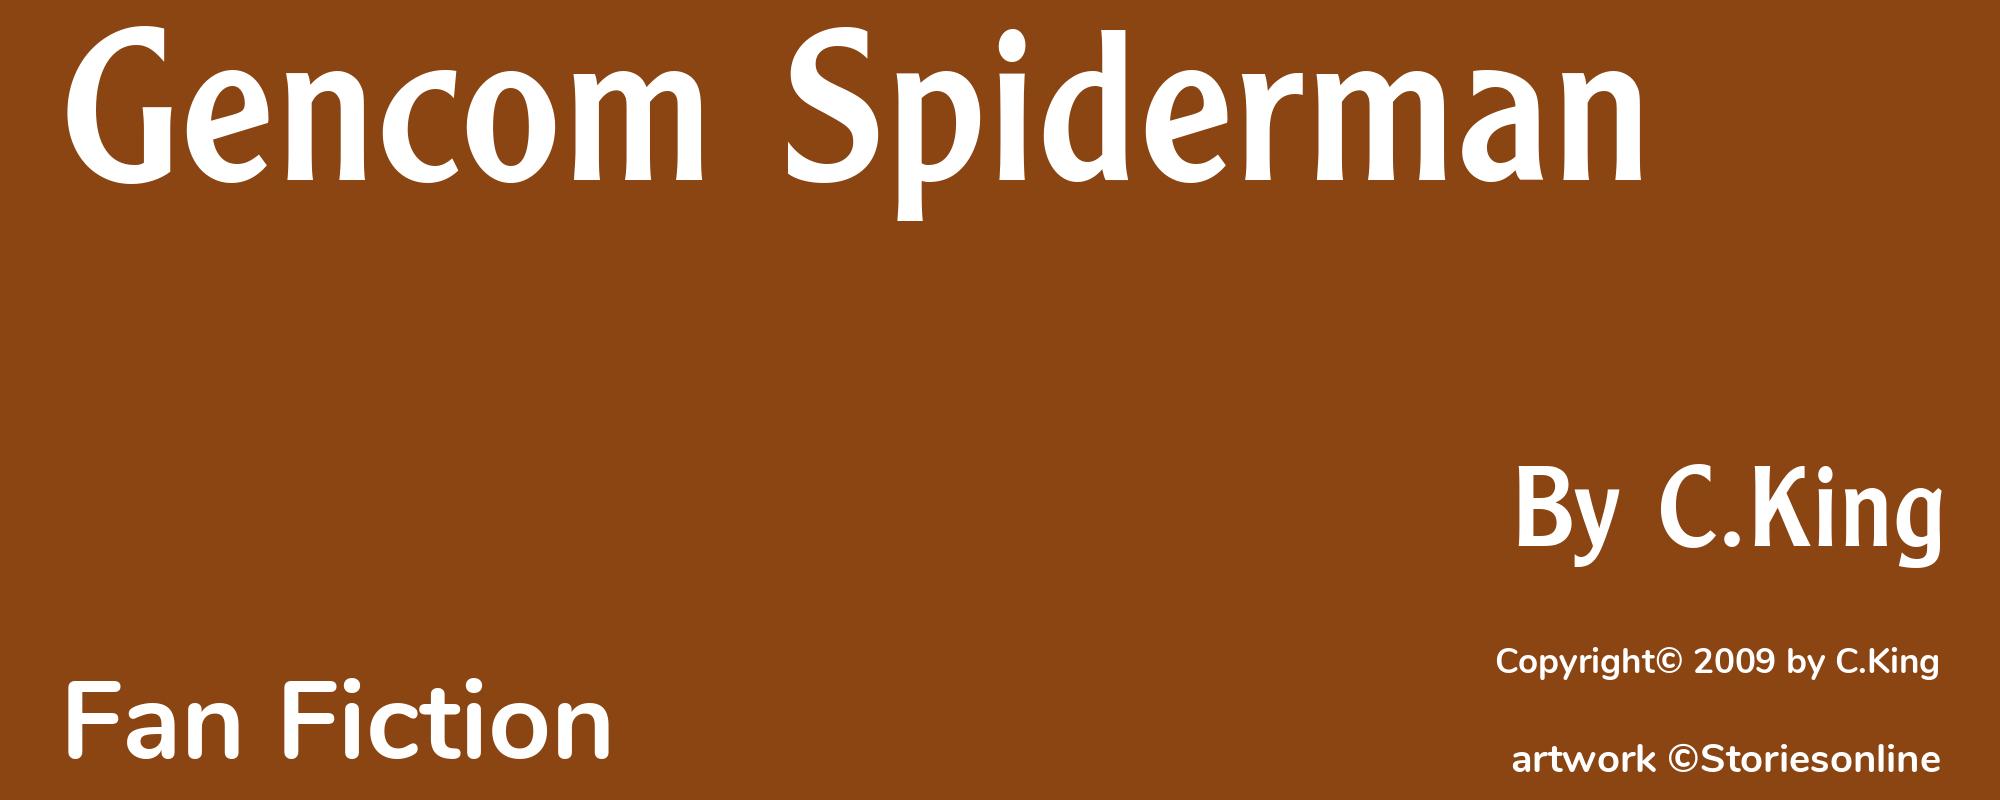 Gencom Spiderman - Cover